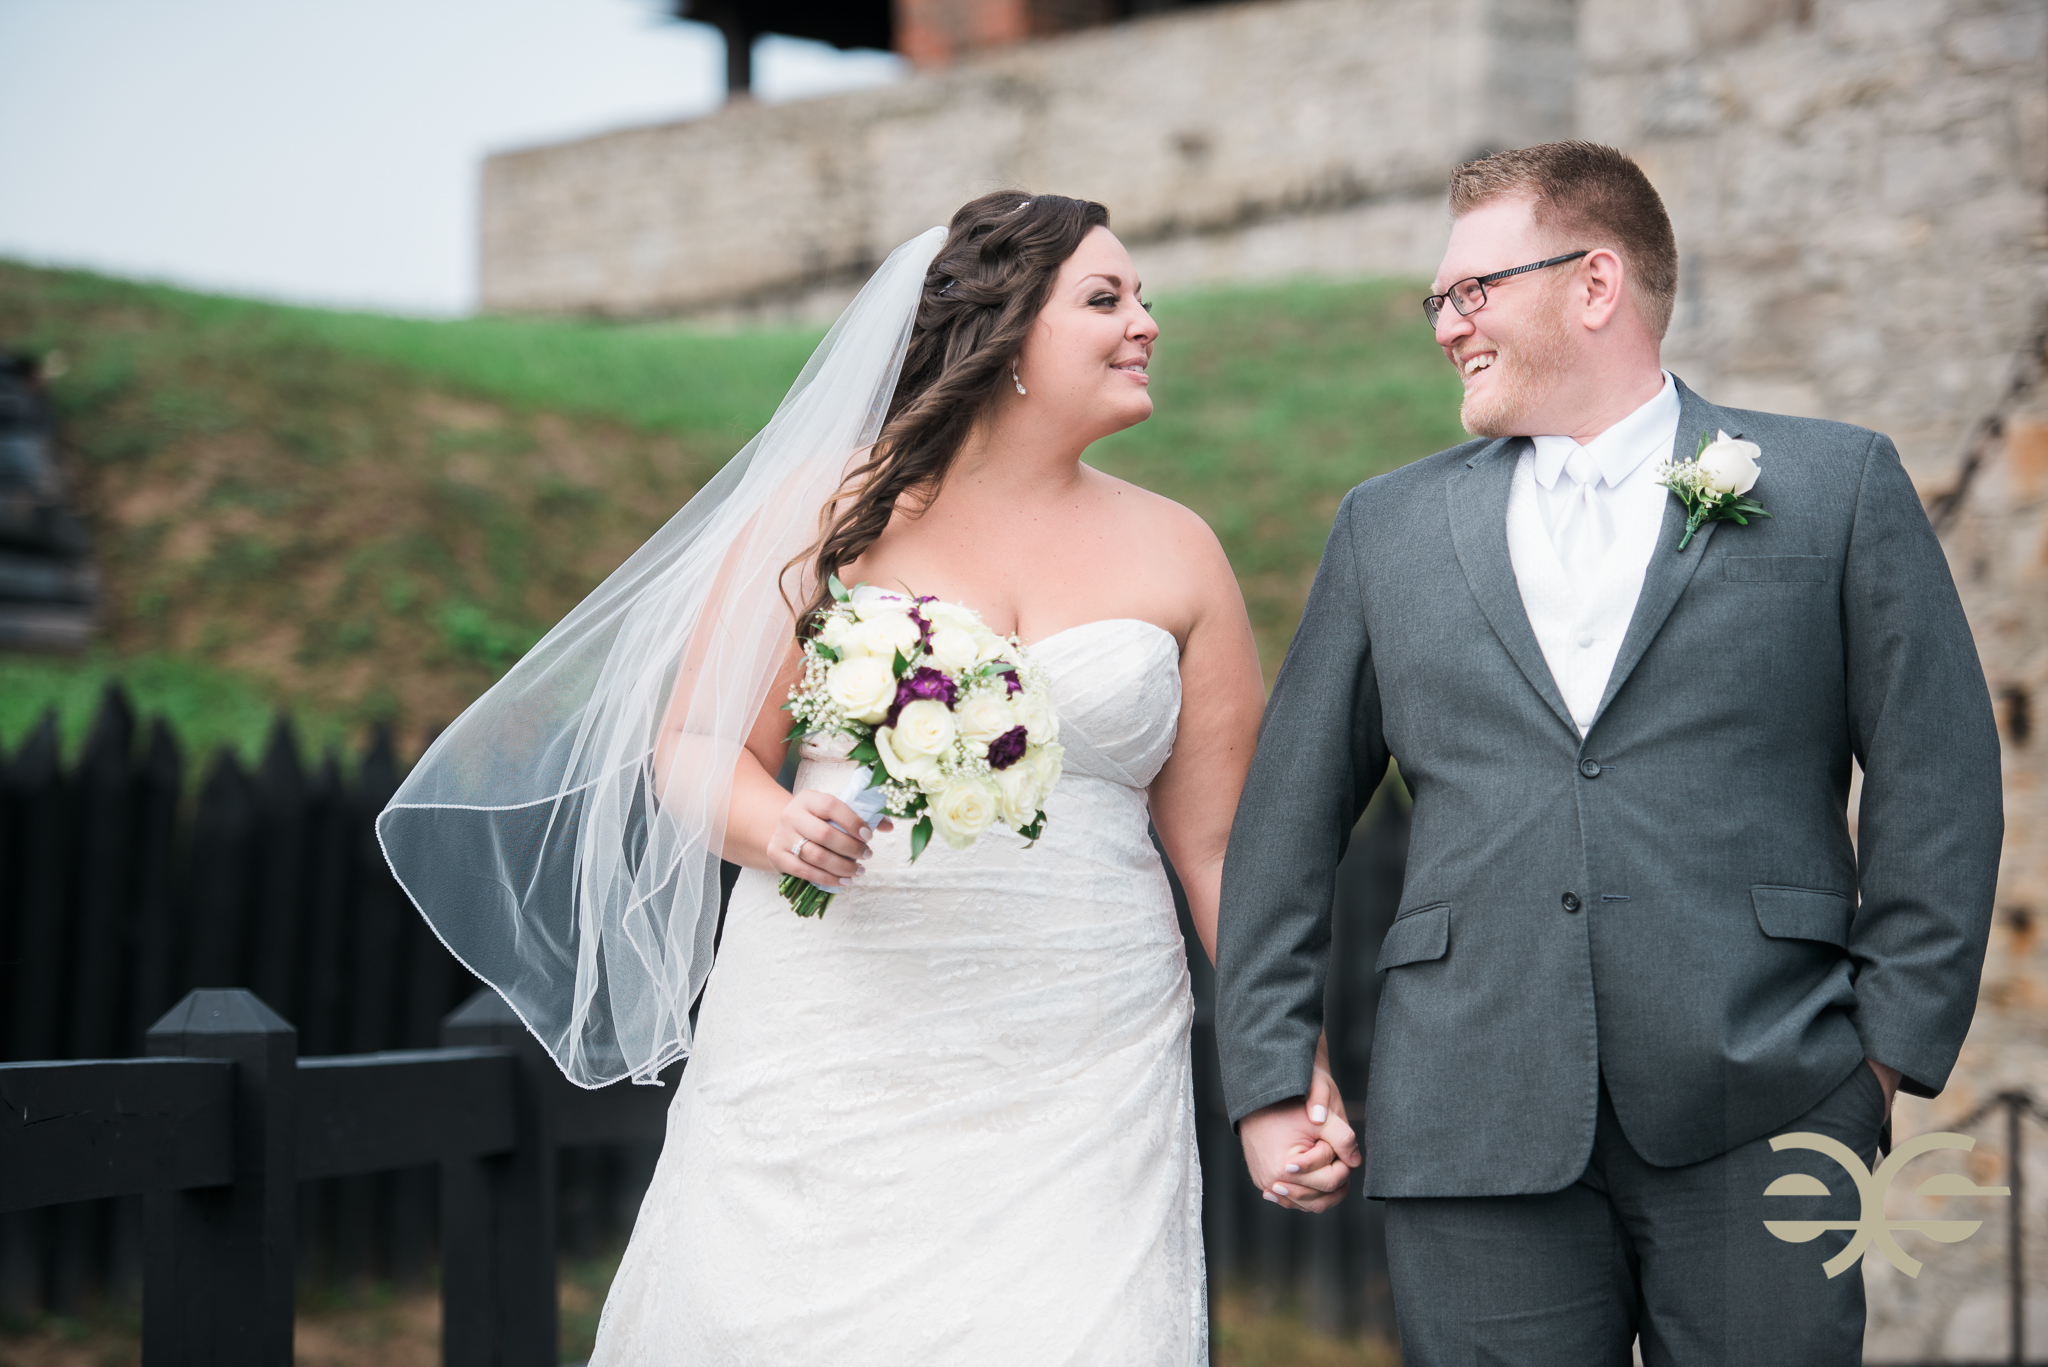 A Rainy October Wedding|Buffalo Wedding Photography Image